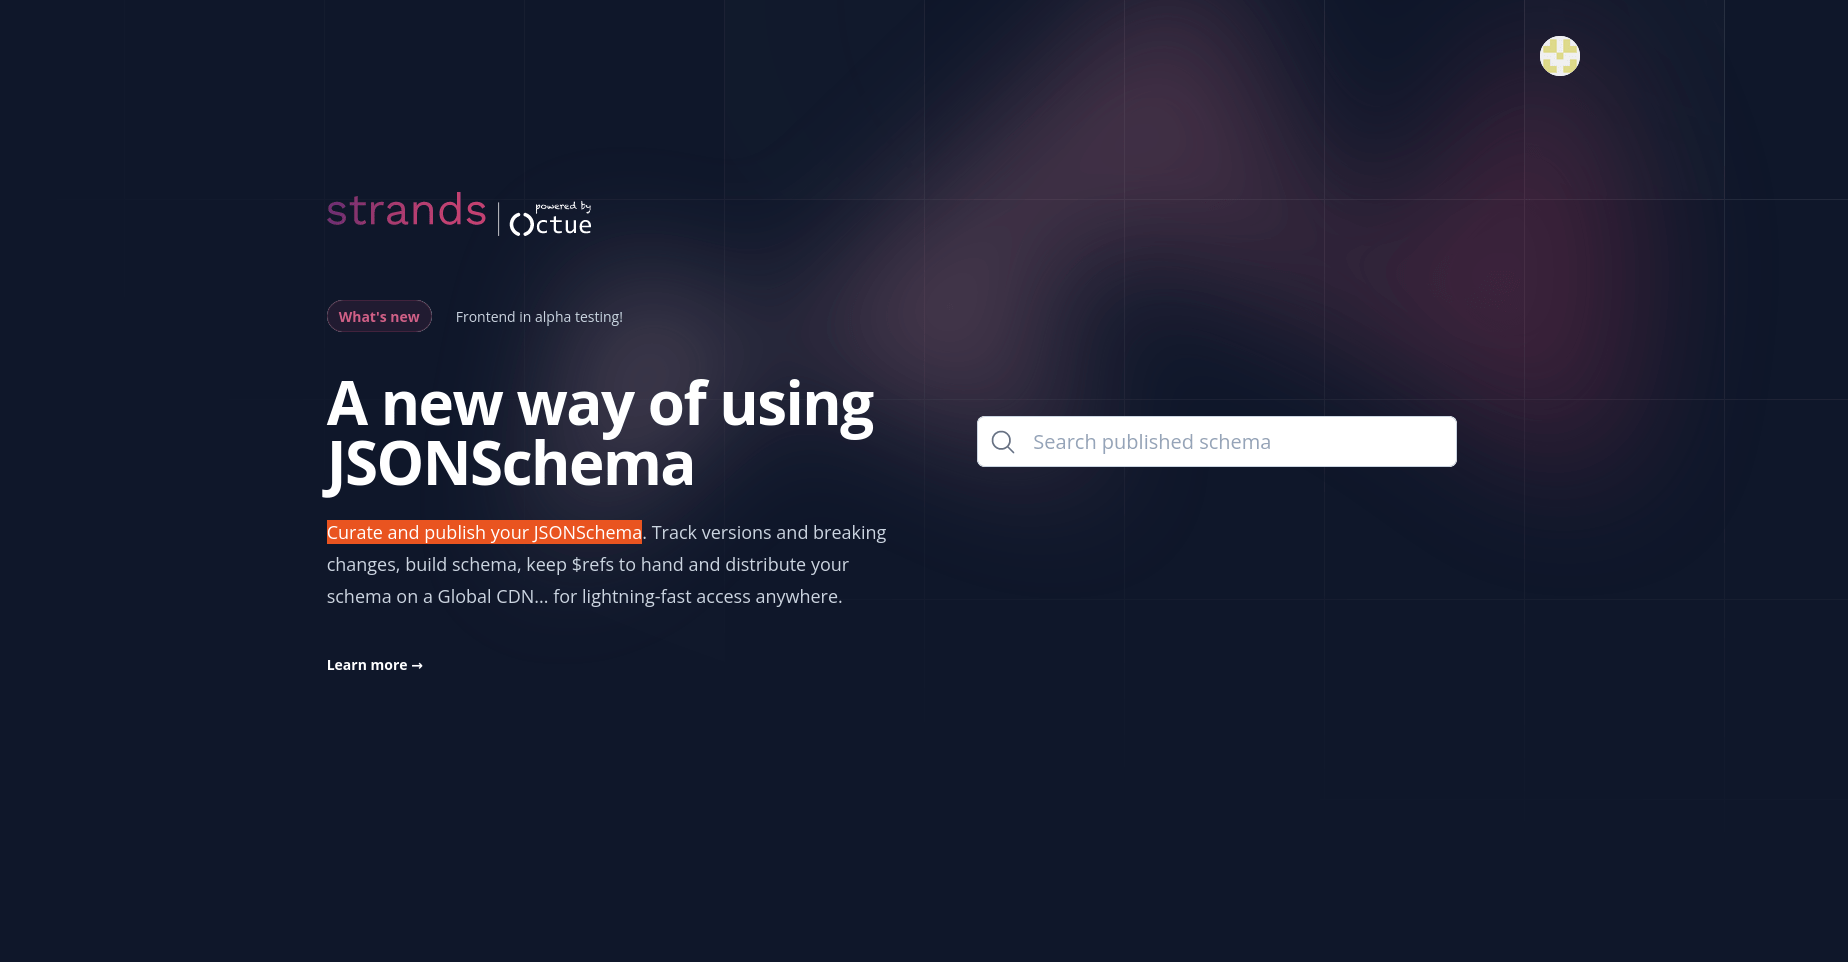 JSON Schema Management Platform